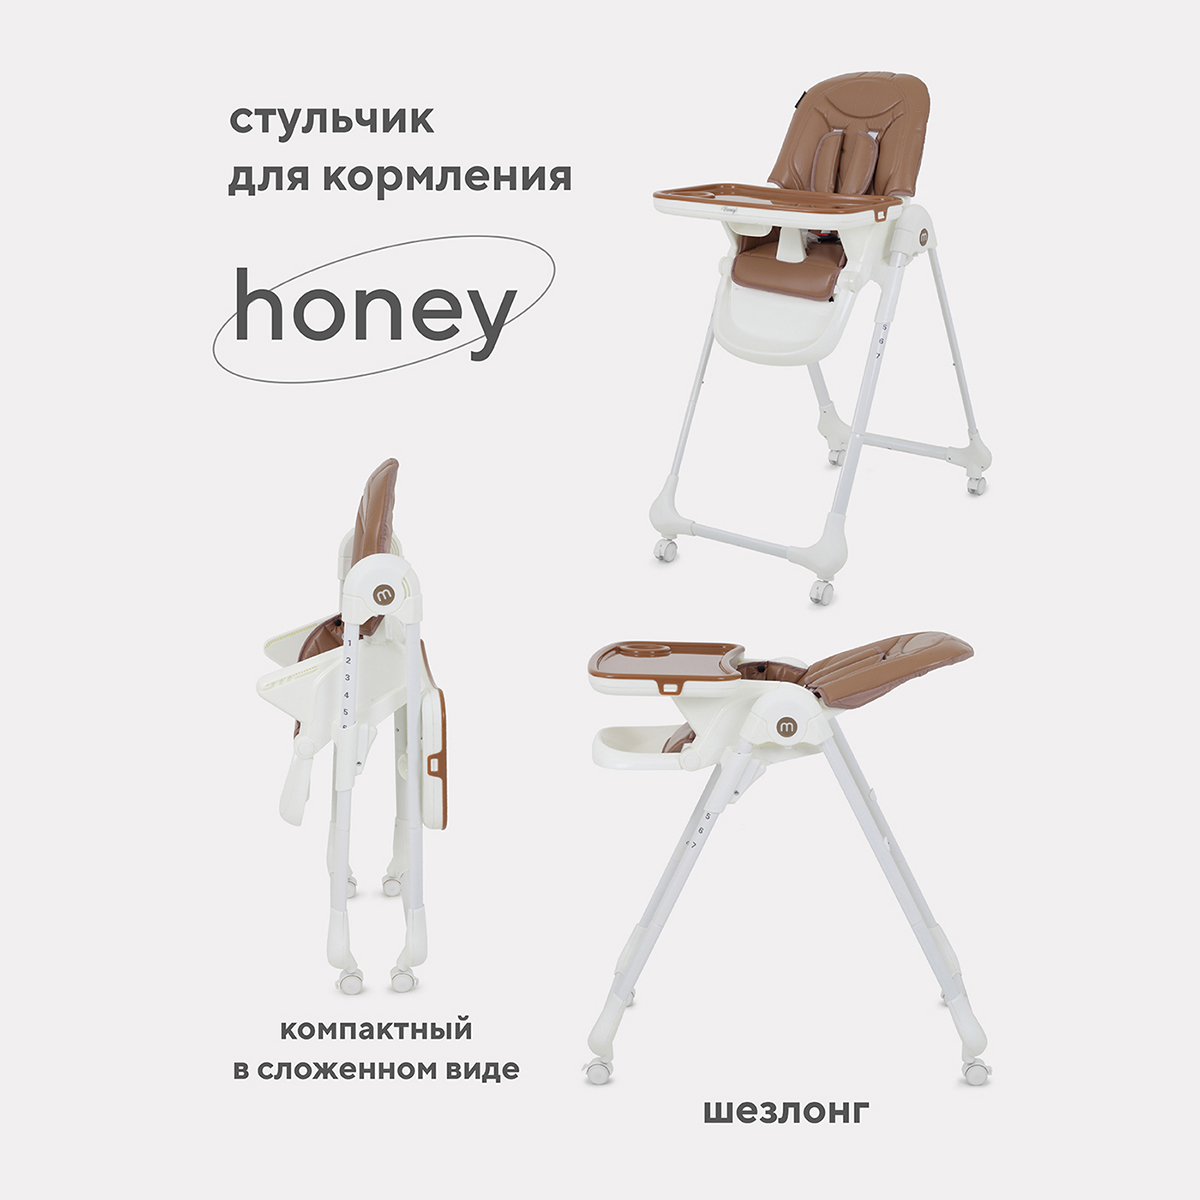 Стульчик для кормления MOWBaby HONEY от 6 месяцев RH600 beige стульчик для кормления mowbaby honey green